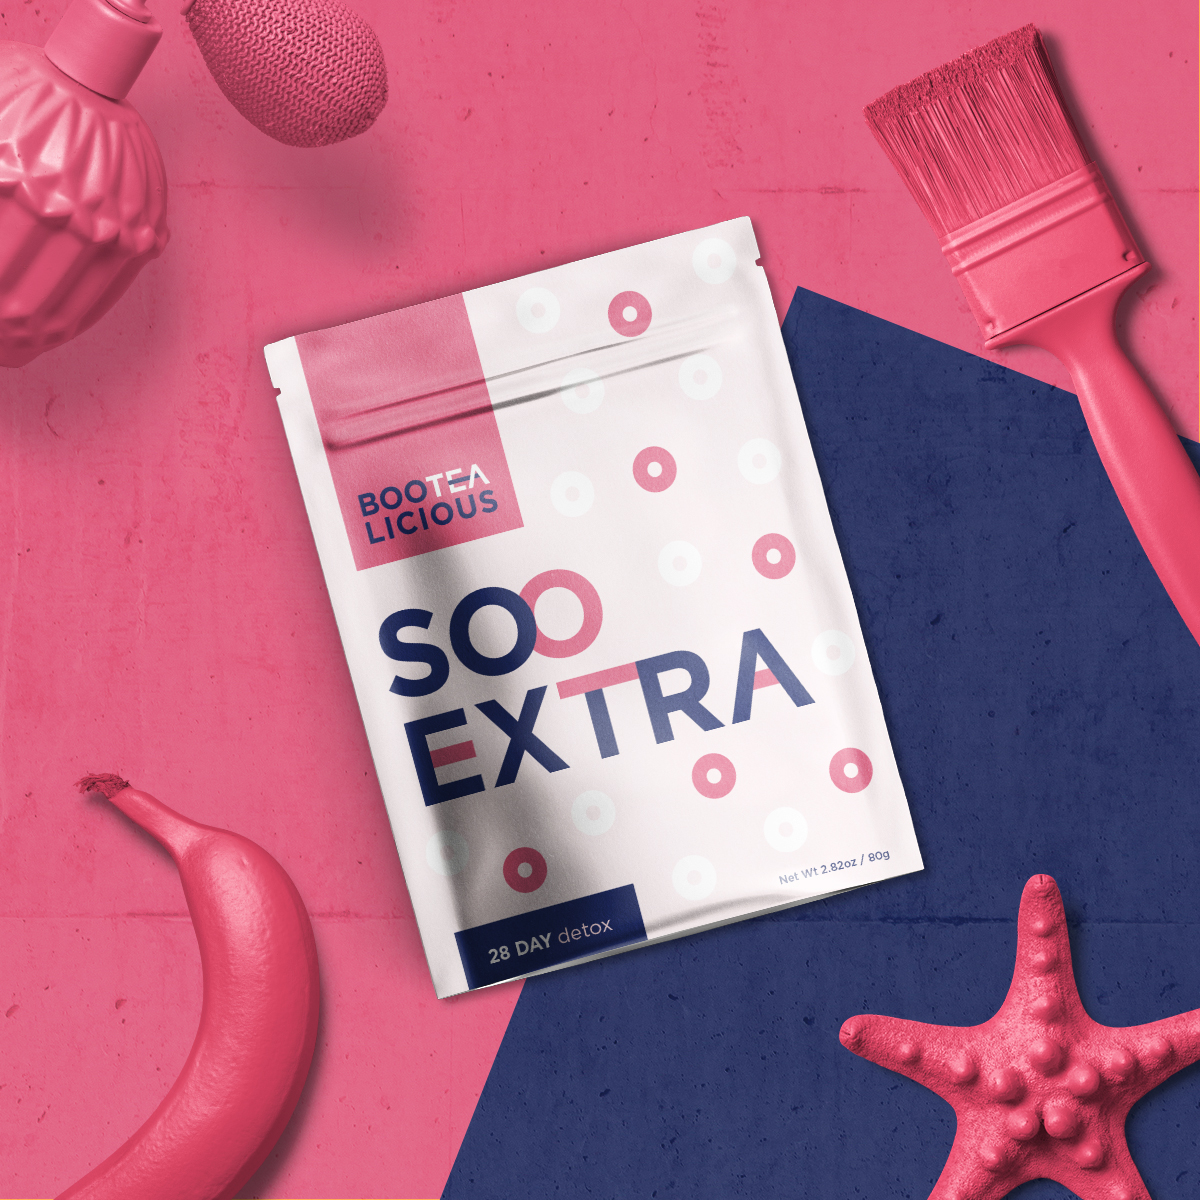 Soo Extra tea packaging flatlay